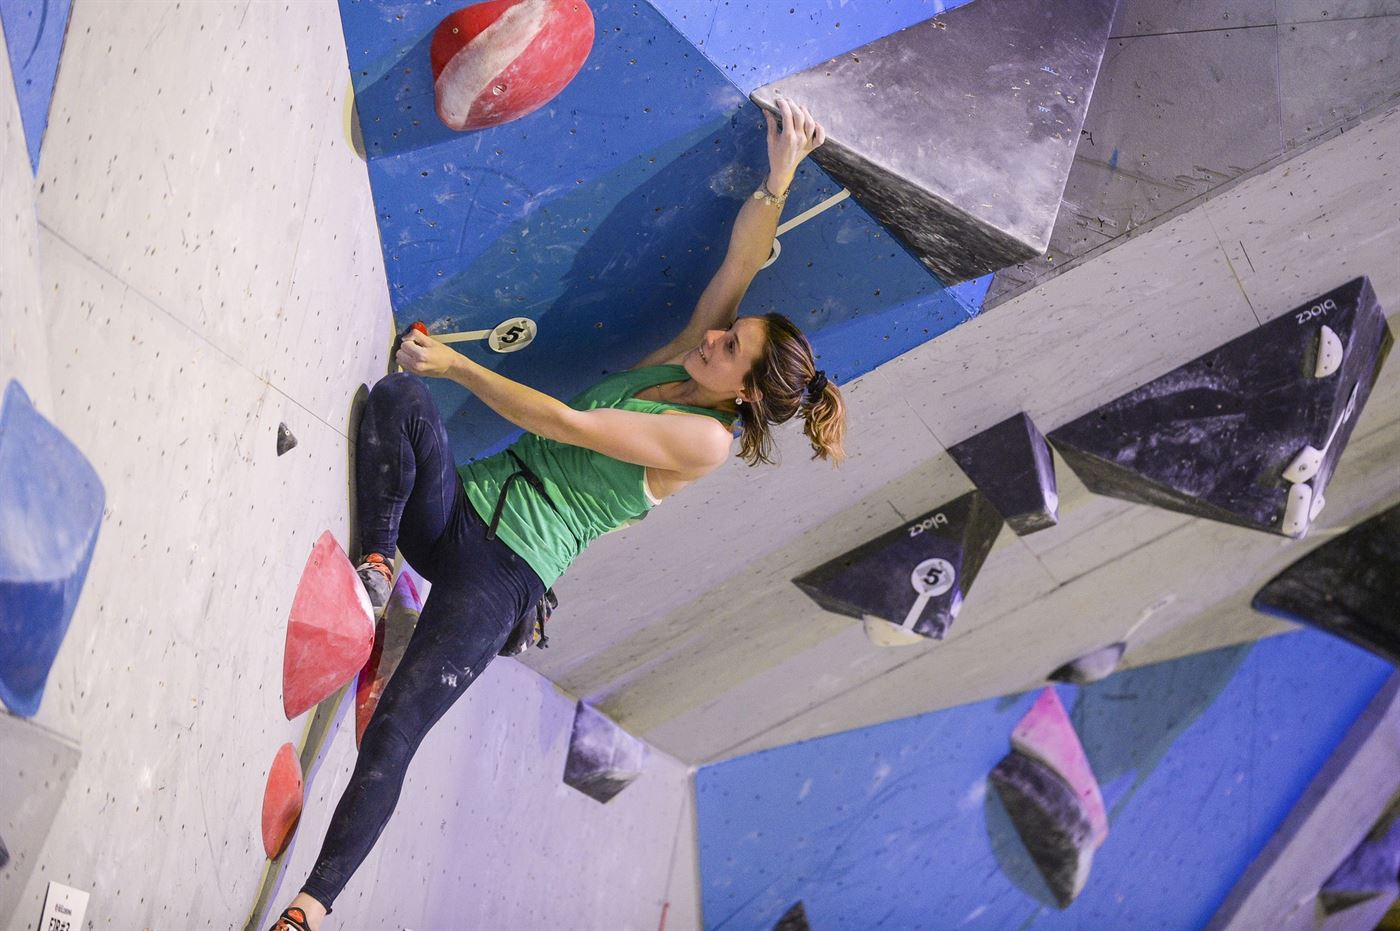   
																Rock Climber Amanda Martino Is a Team of One 
															 